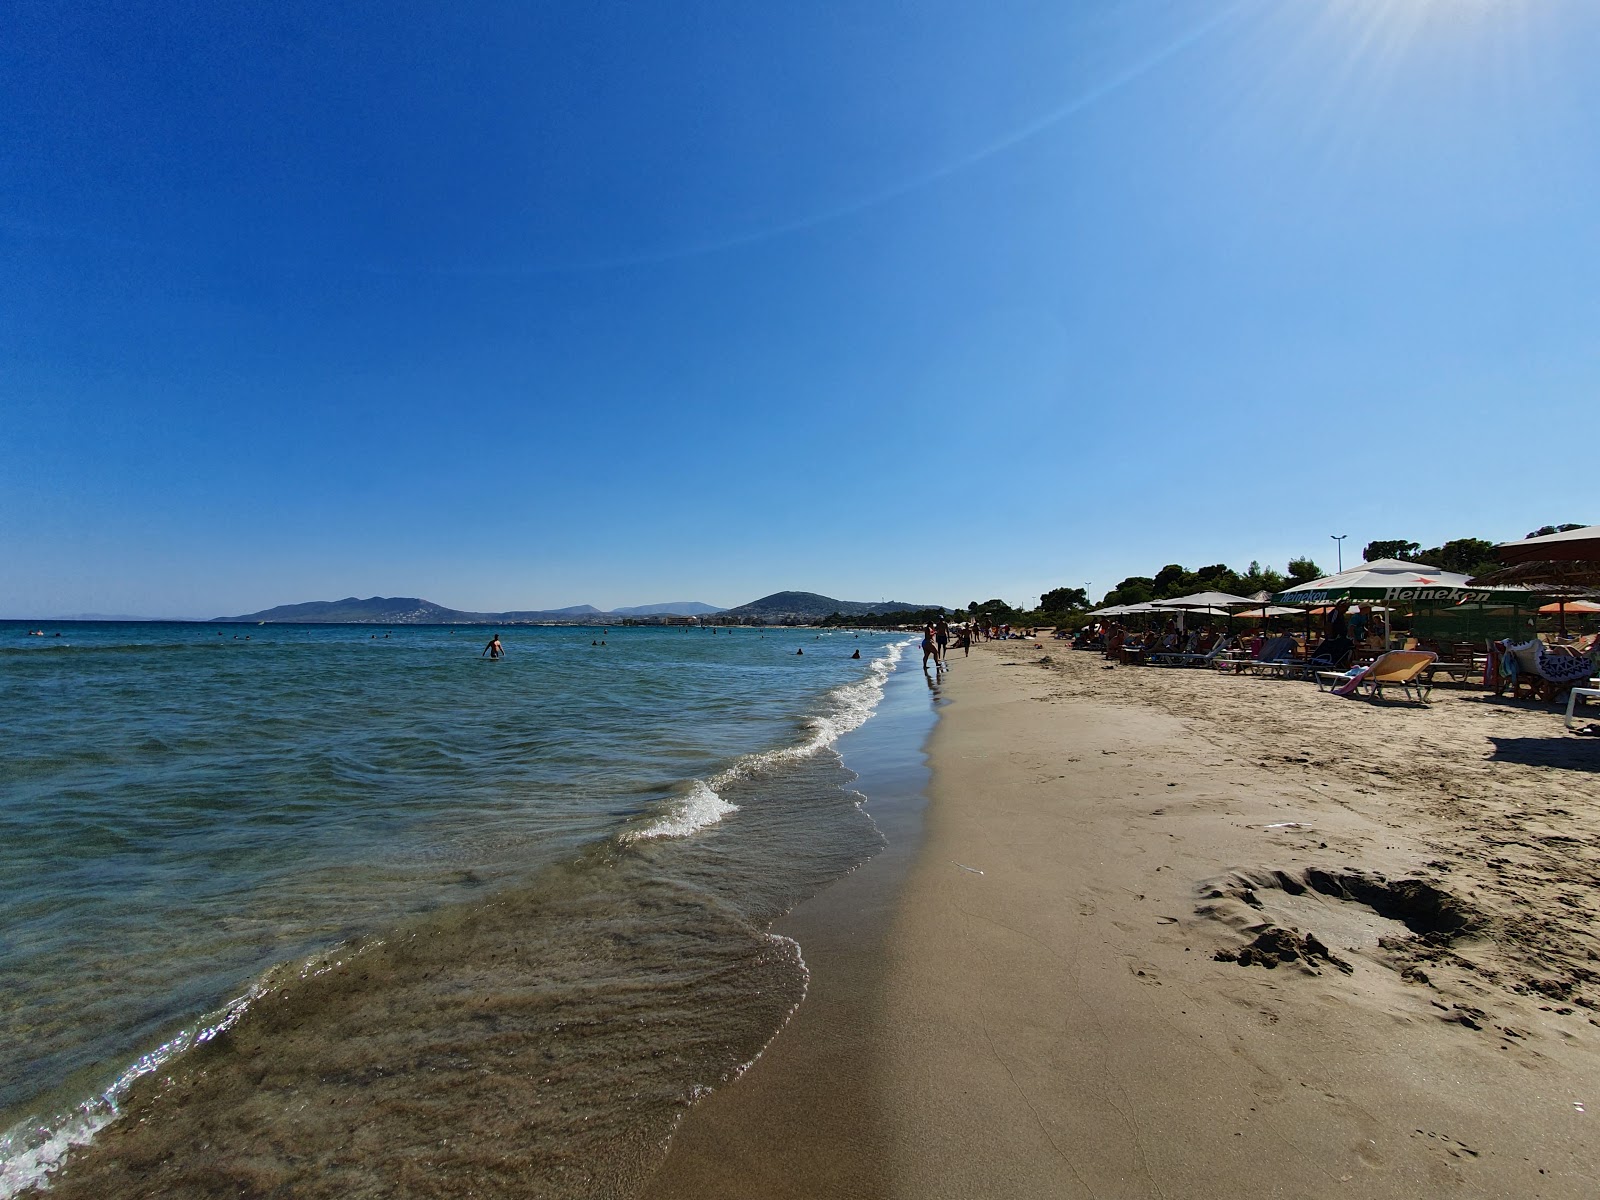 Zdjęcie Artemis beach z powierzchnią jasny piasek